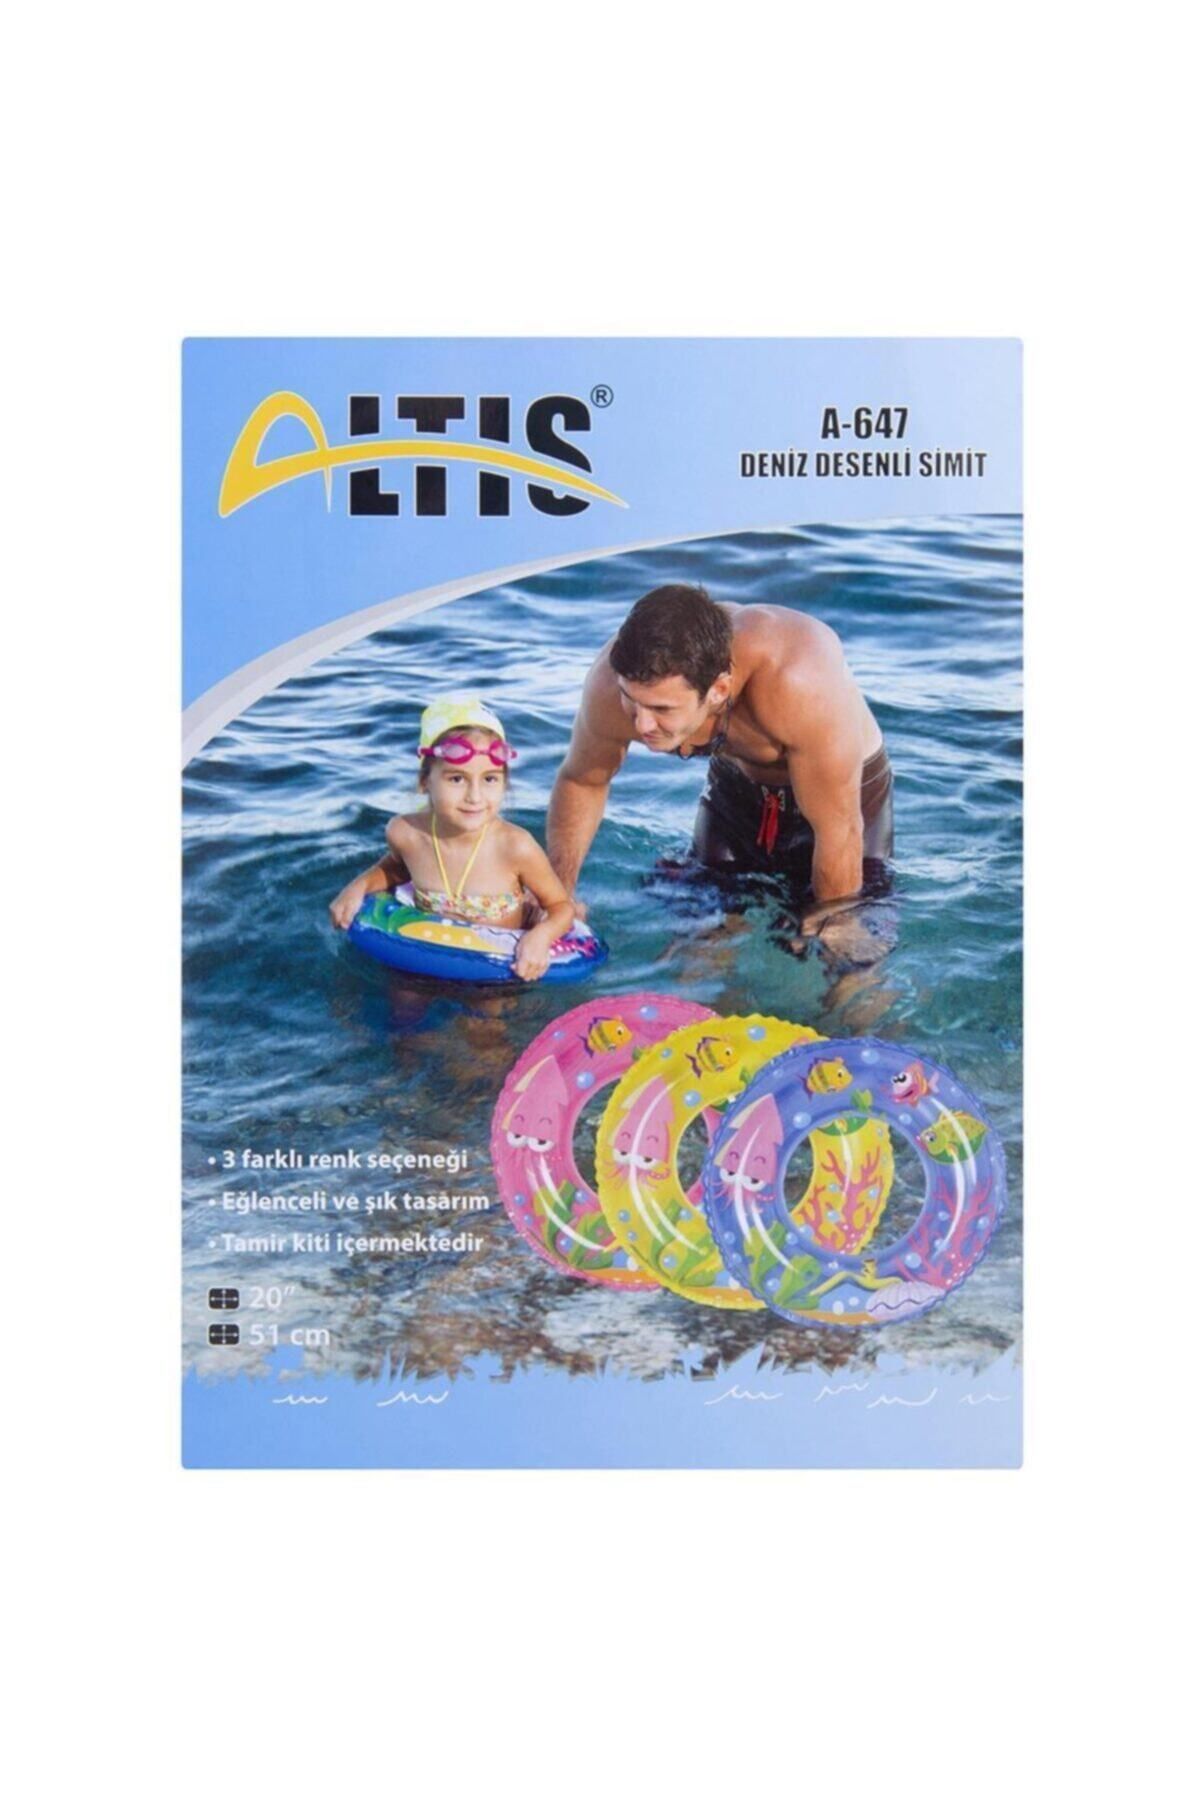 ALTIS 4-647 Deniz Desenli Simit - Çocuk Yüzme Simidi